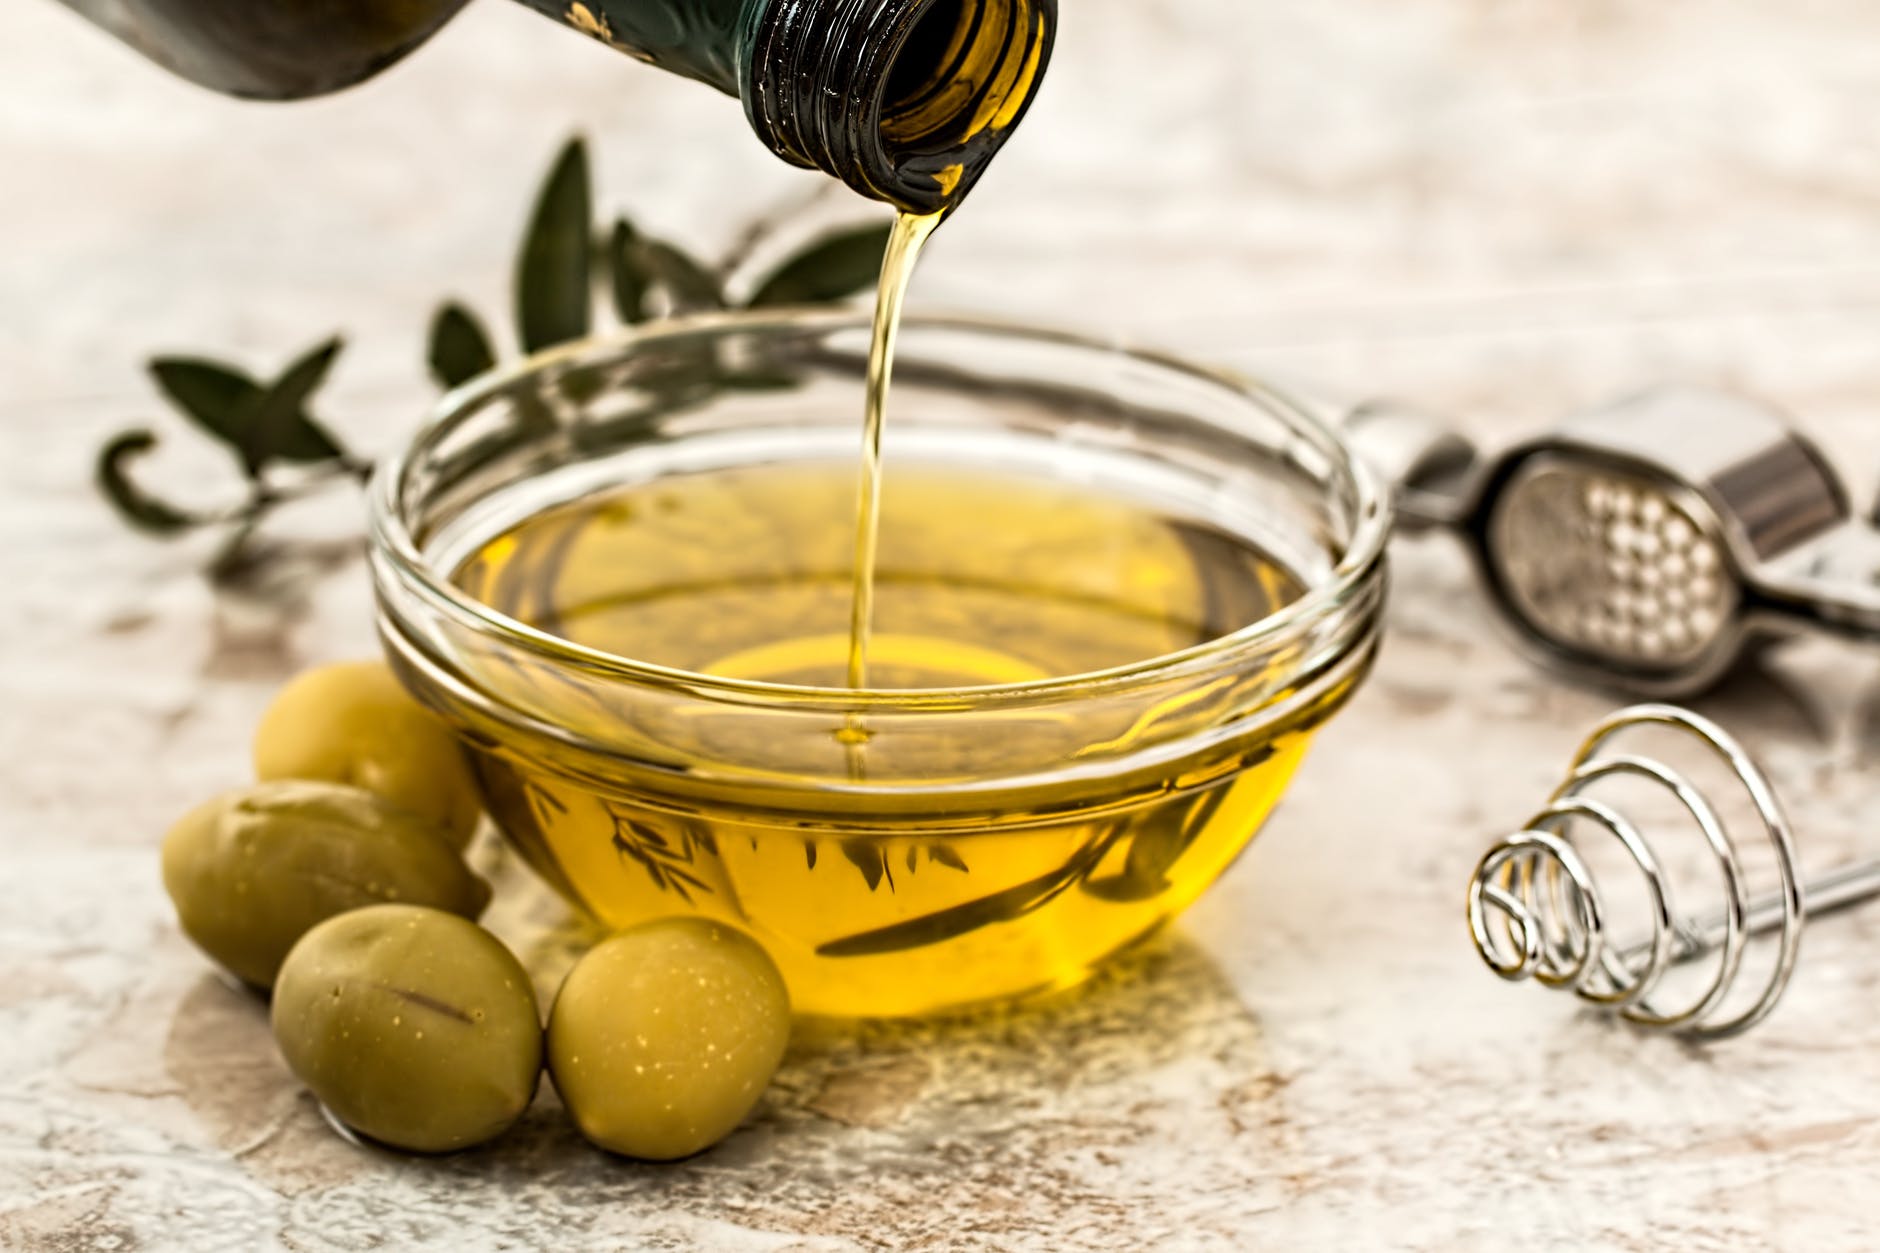 L'olio d’oliva ci renderà più intelligenti olive oil salad dressing cooking olive